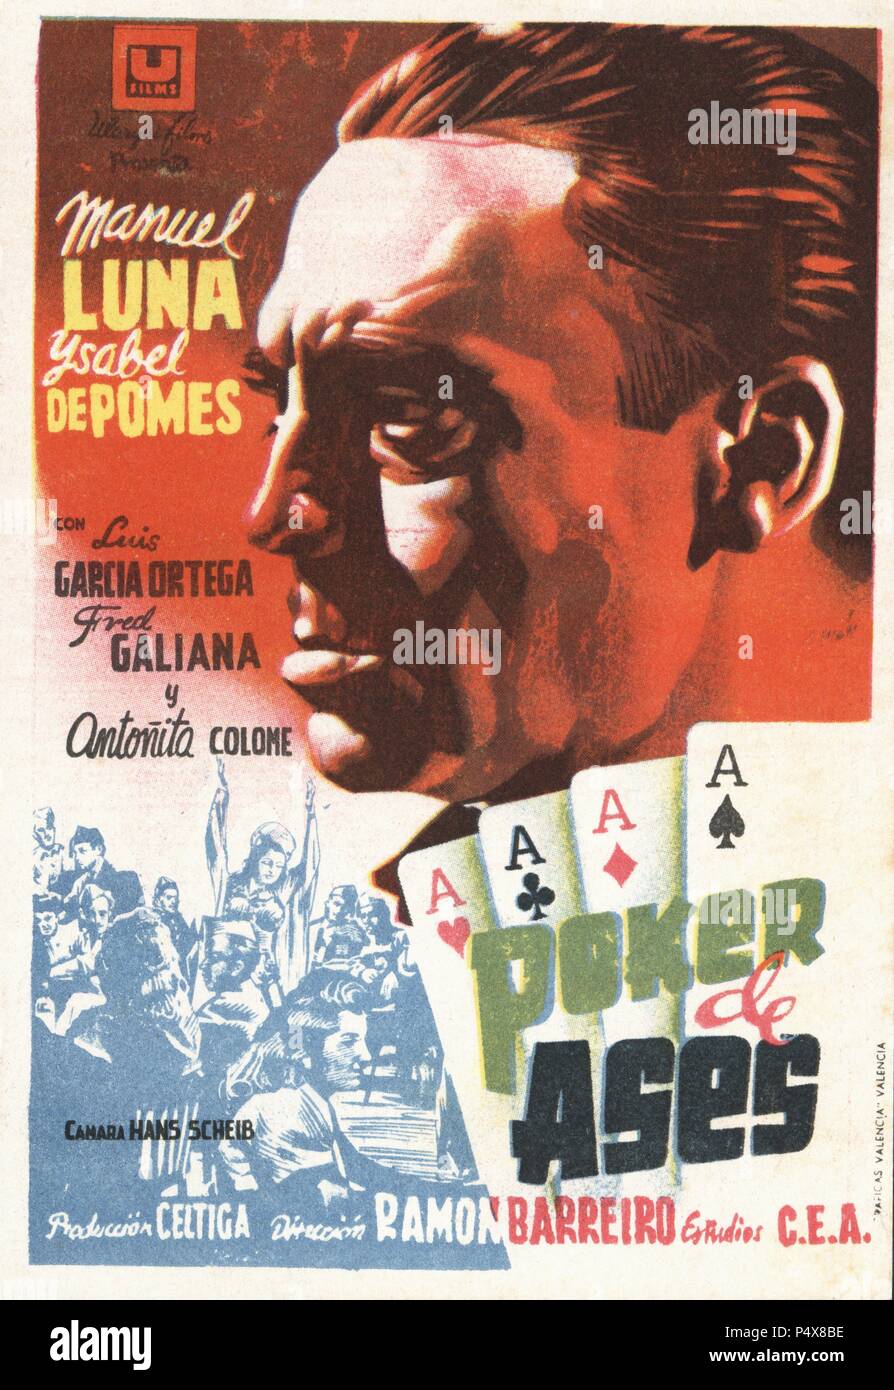 Cartel de la película Póker de Ases, interpretada por Manuel de Luna e Isabel de Pomes, dirigida por Ramón Barreiro. España, año 1947. Stock Photo